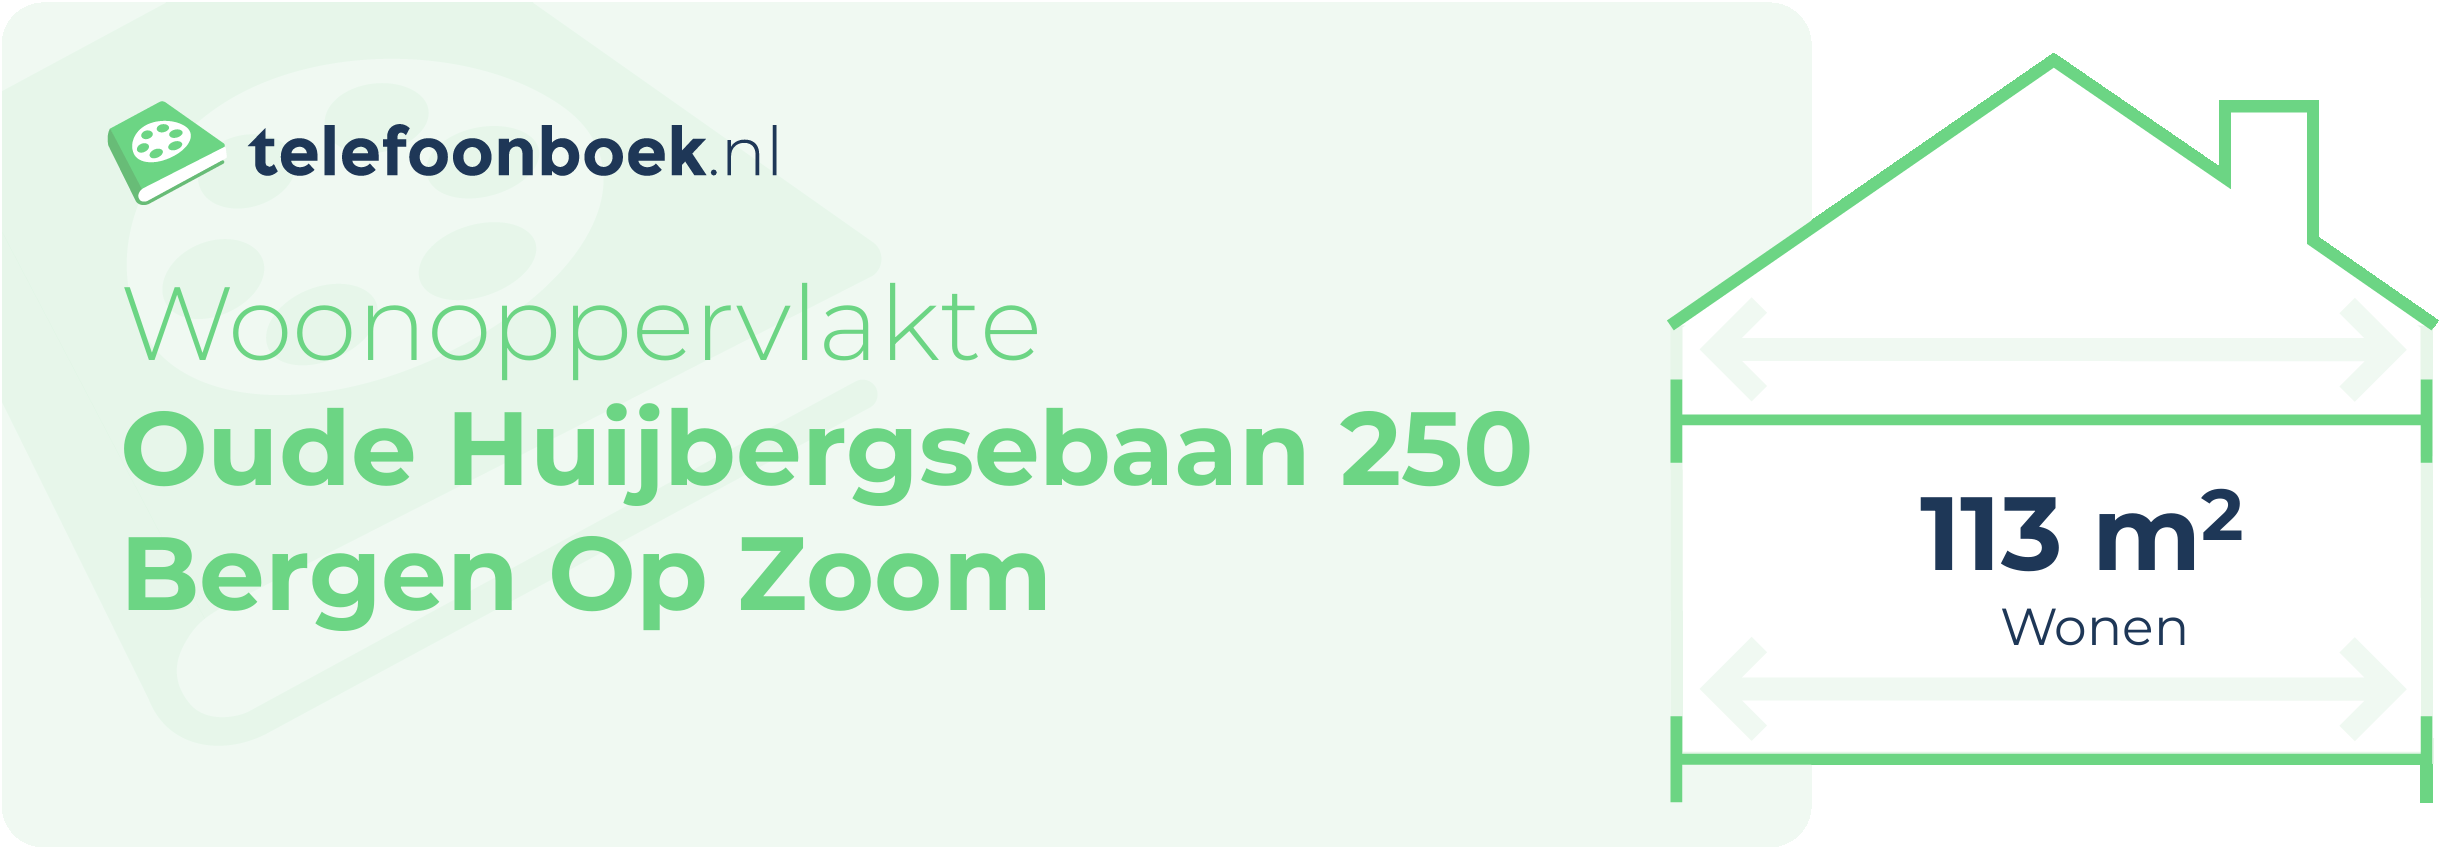 Woonoppervlakte Oude Huijbergsebaan 250 Bergen Op Zoom